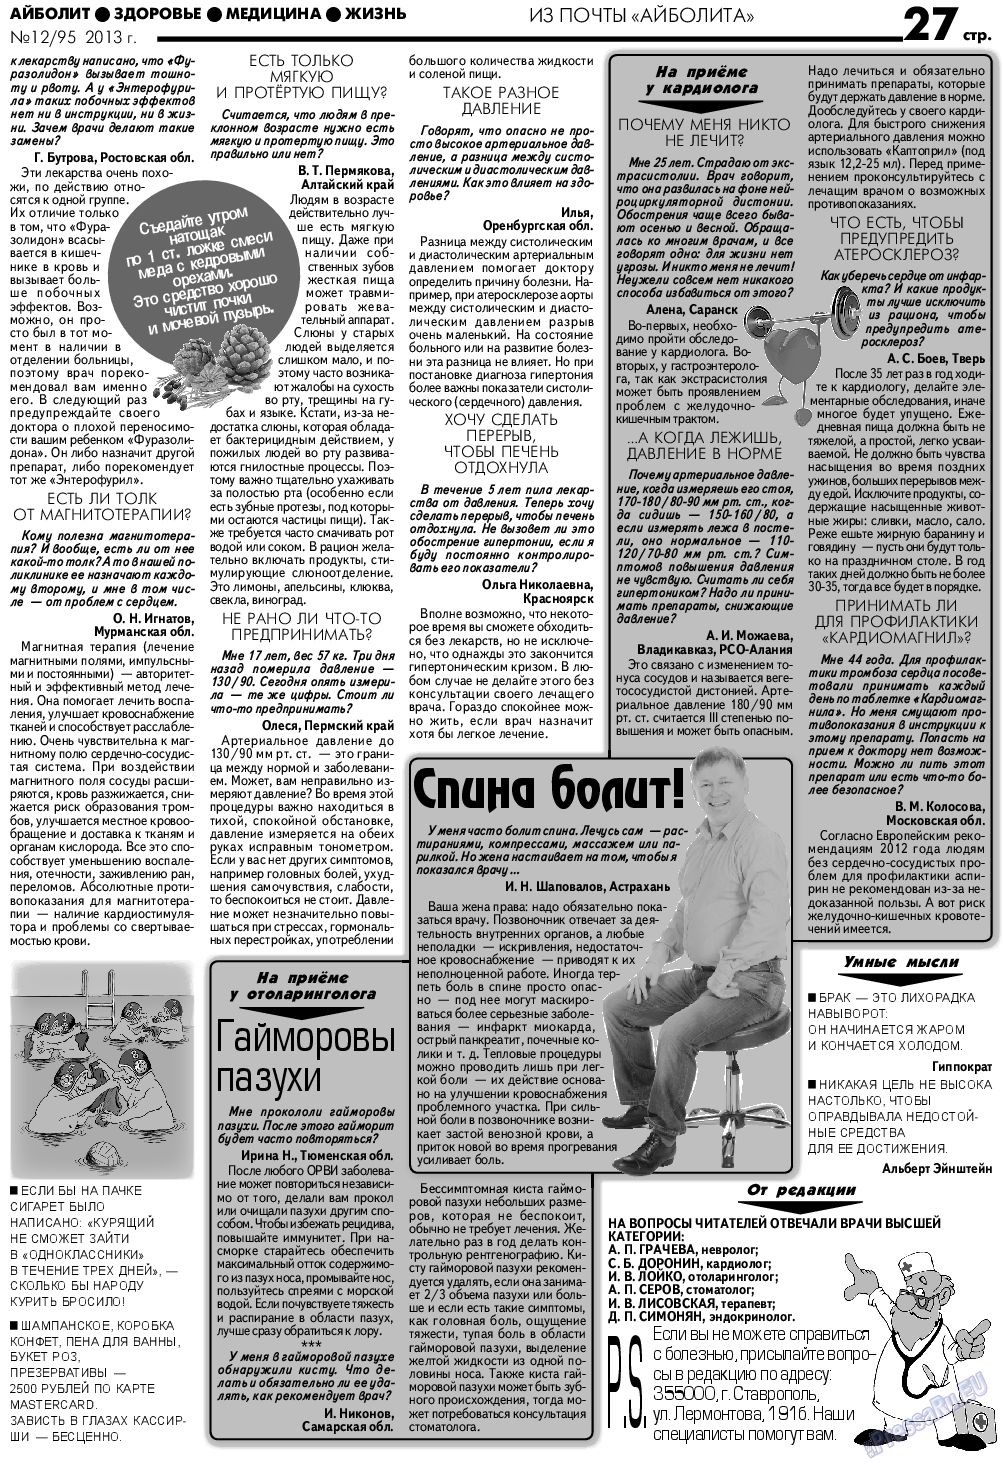 АйБолит, газета. 2013 №12 стр.27